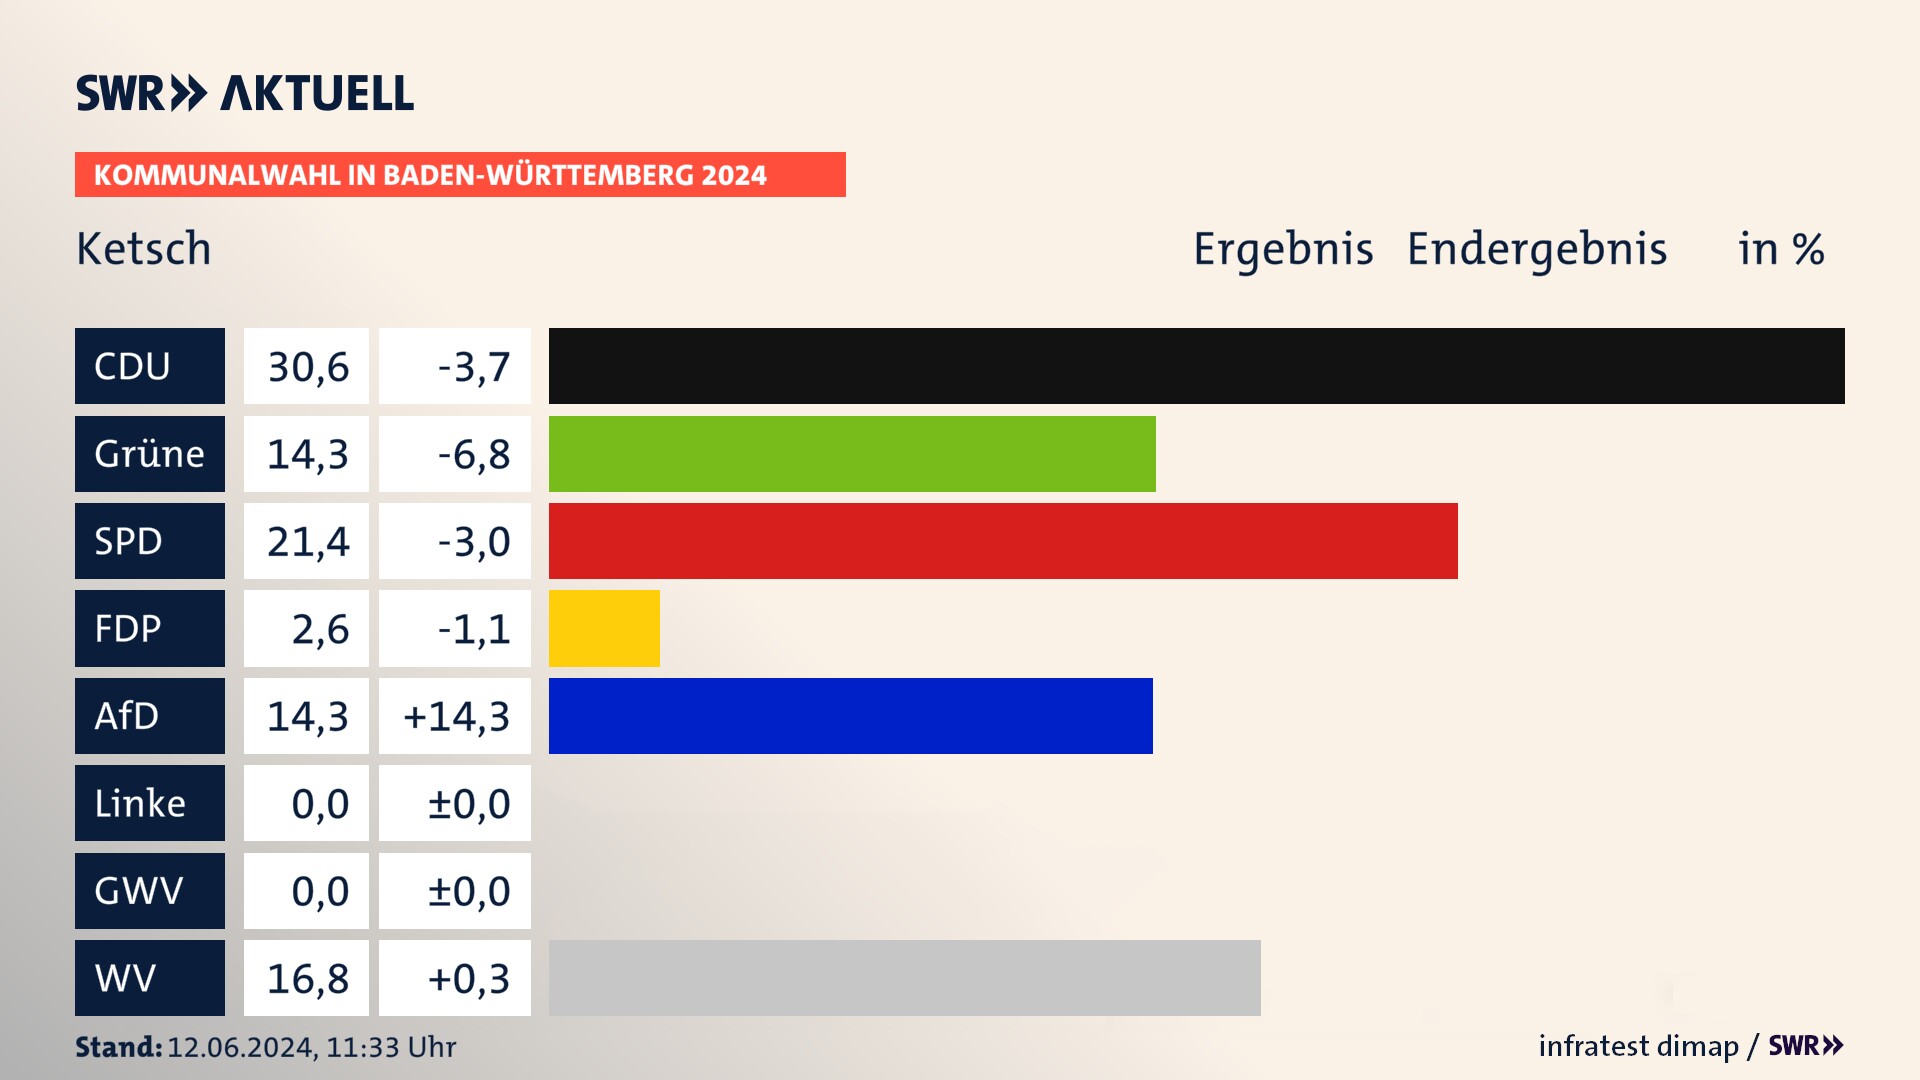 Kommunalwahl 2024 Endergebnis Zweitstimme für Ketsch. In Ketsch erzielt die CDU 30,6 Prozent der gültigen  Stimmen. Die Grünen landen bei 14,3 Prozent. Die SPD erreicht 21,4 Prozent. Die FDP kommt auf 2,6 Prozent. Die AfD landet bei 14,3 Prozent. Die Wählervereinigungen erreichen 16,8 Prozent.